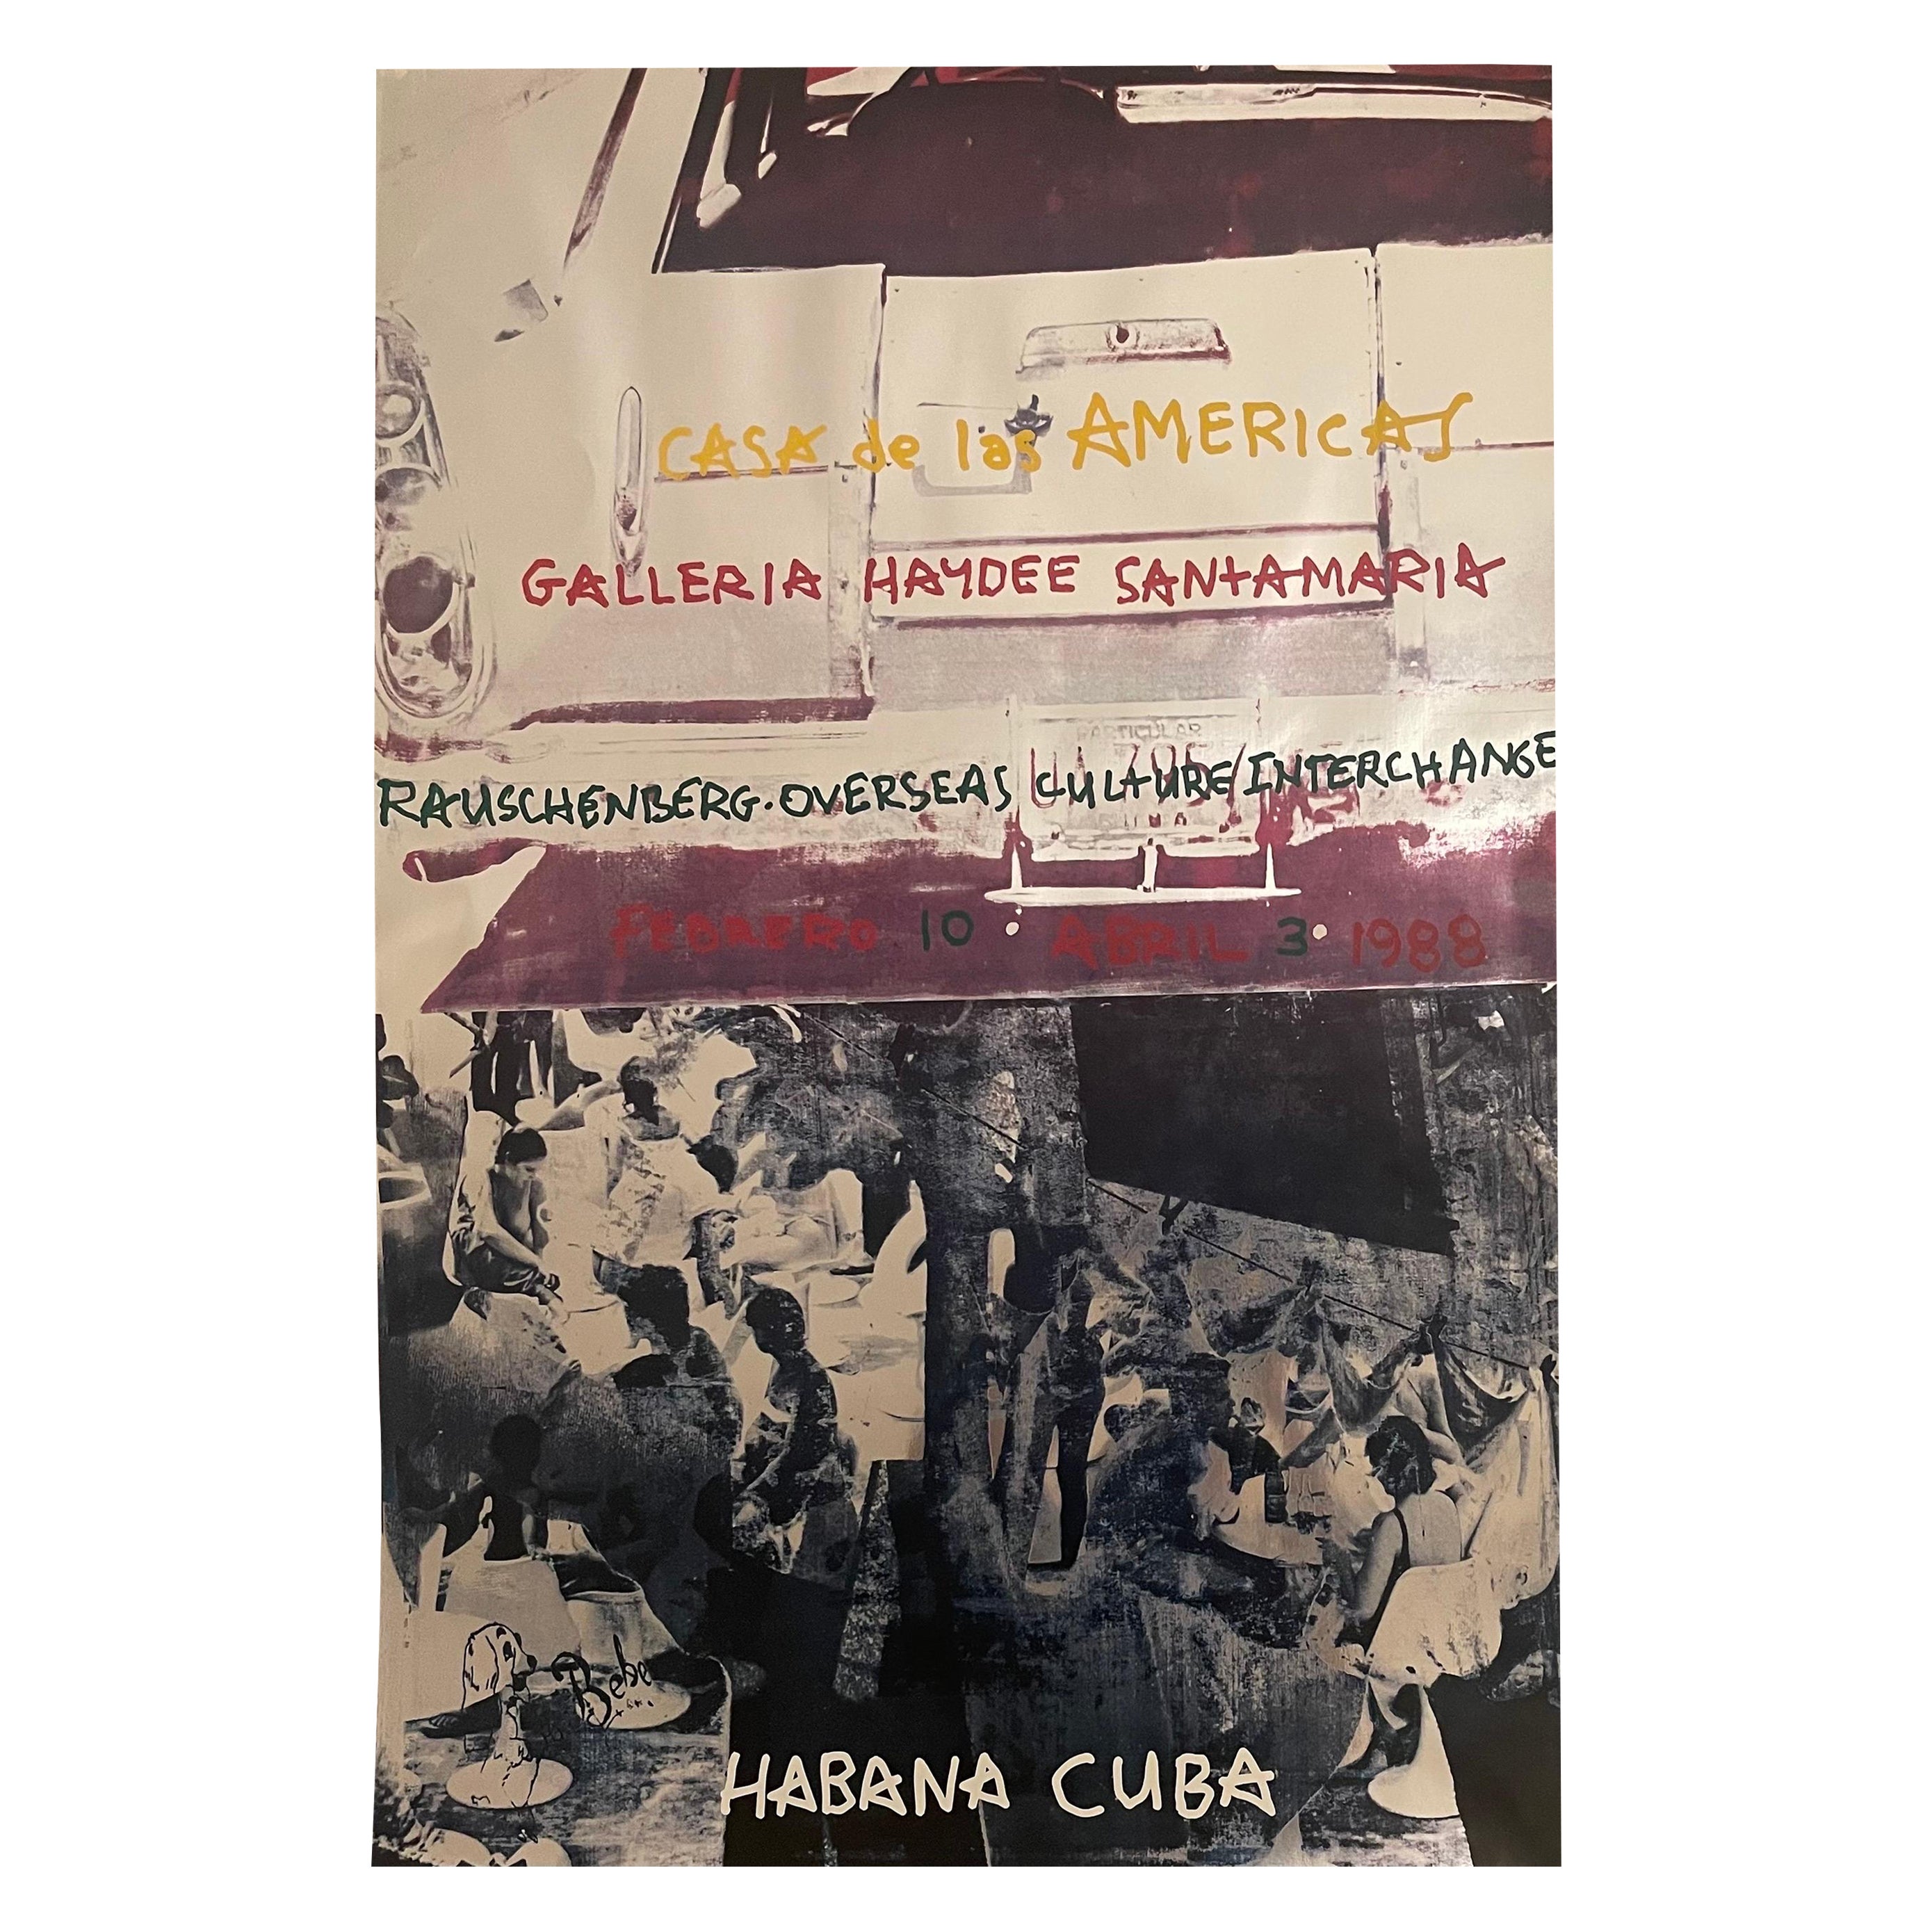 Poster for Roci Cuba, Casa De Las Americas by Robert Rauschenberg, 1988